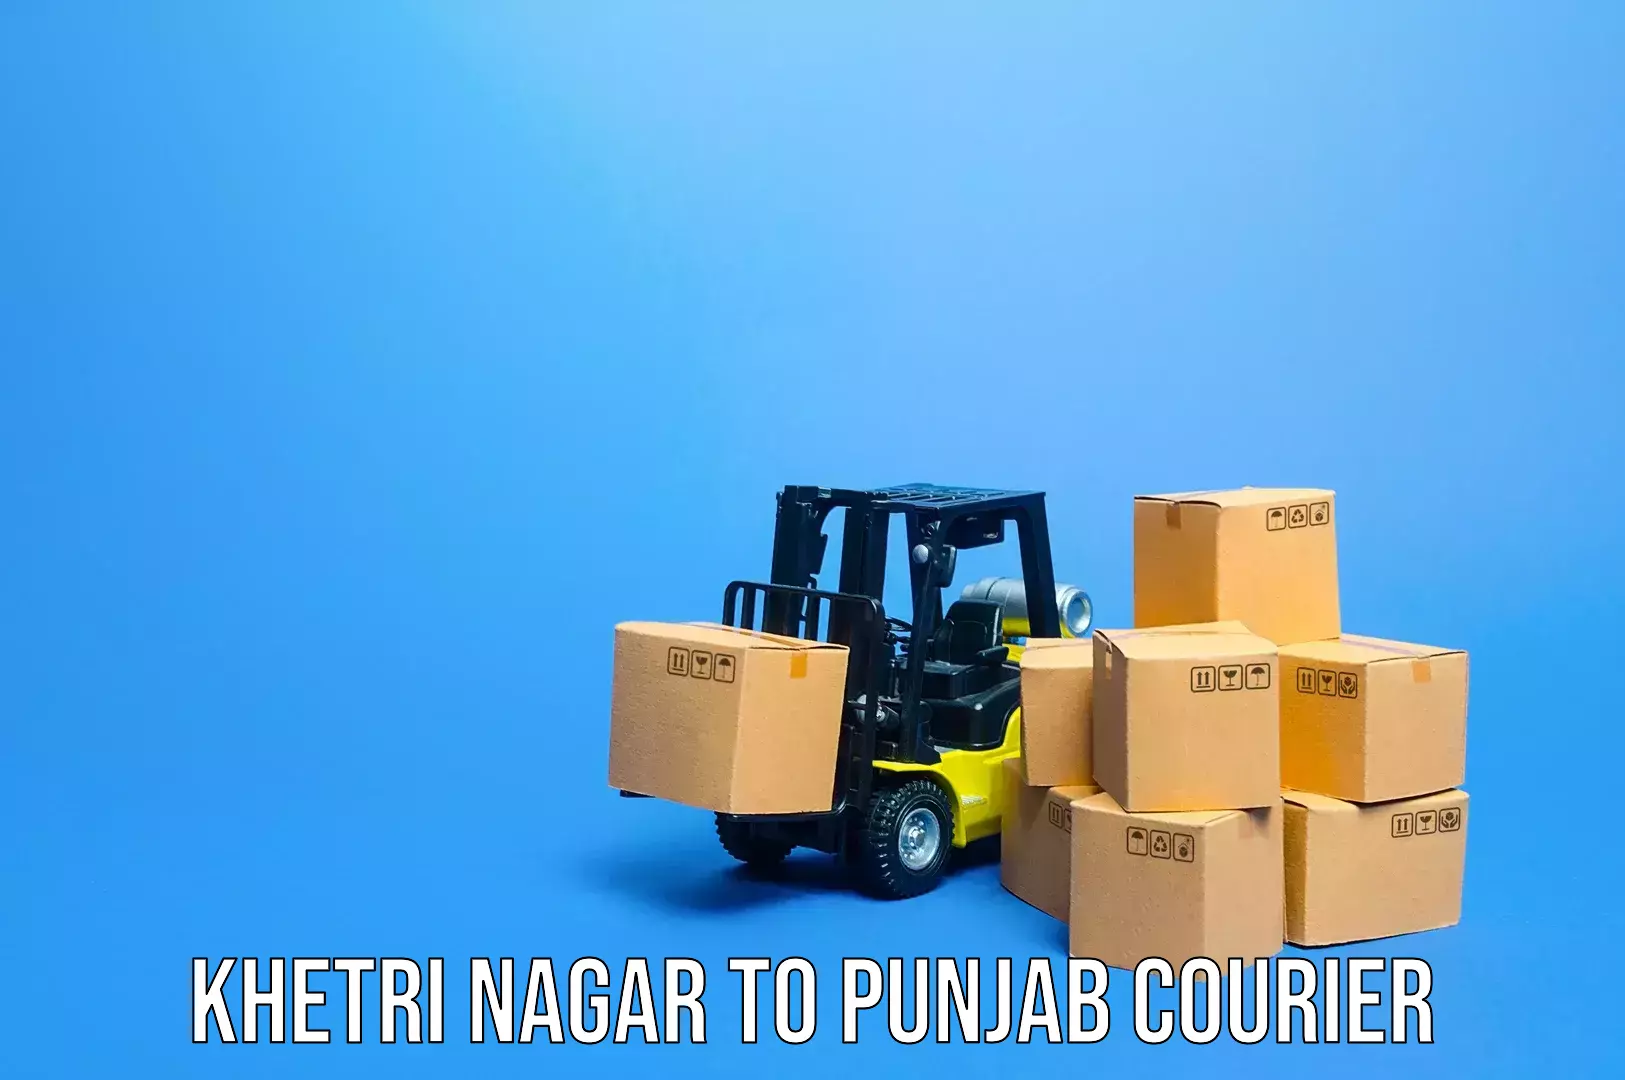 Luggage transport schedule in Khetri Nagar to Punjab